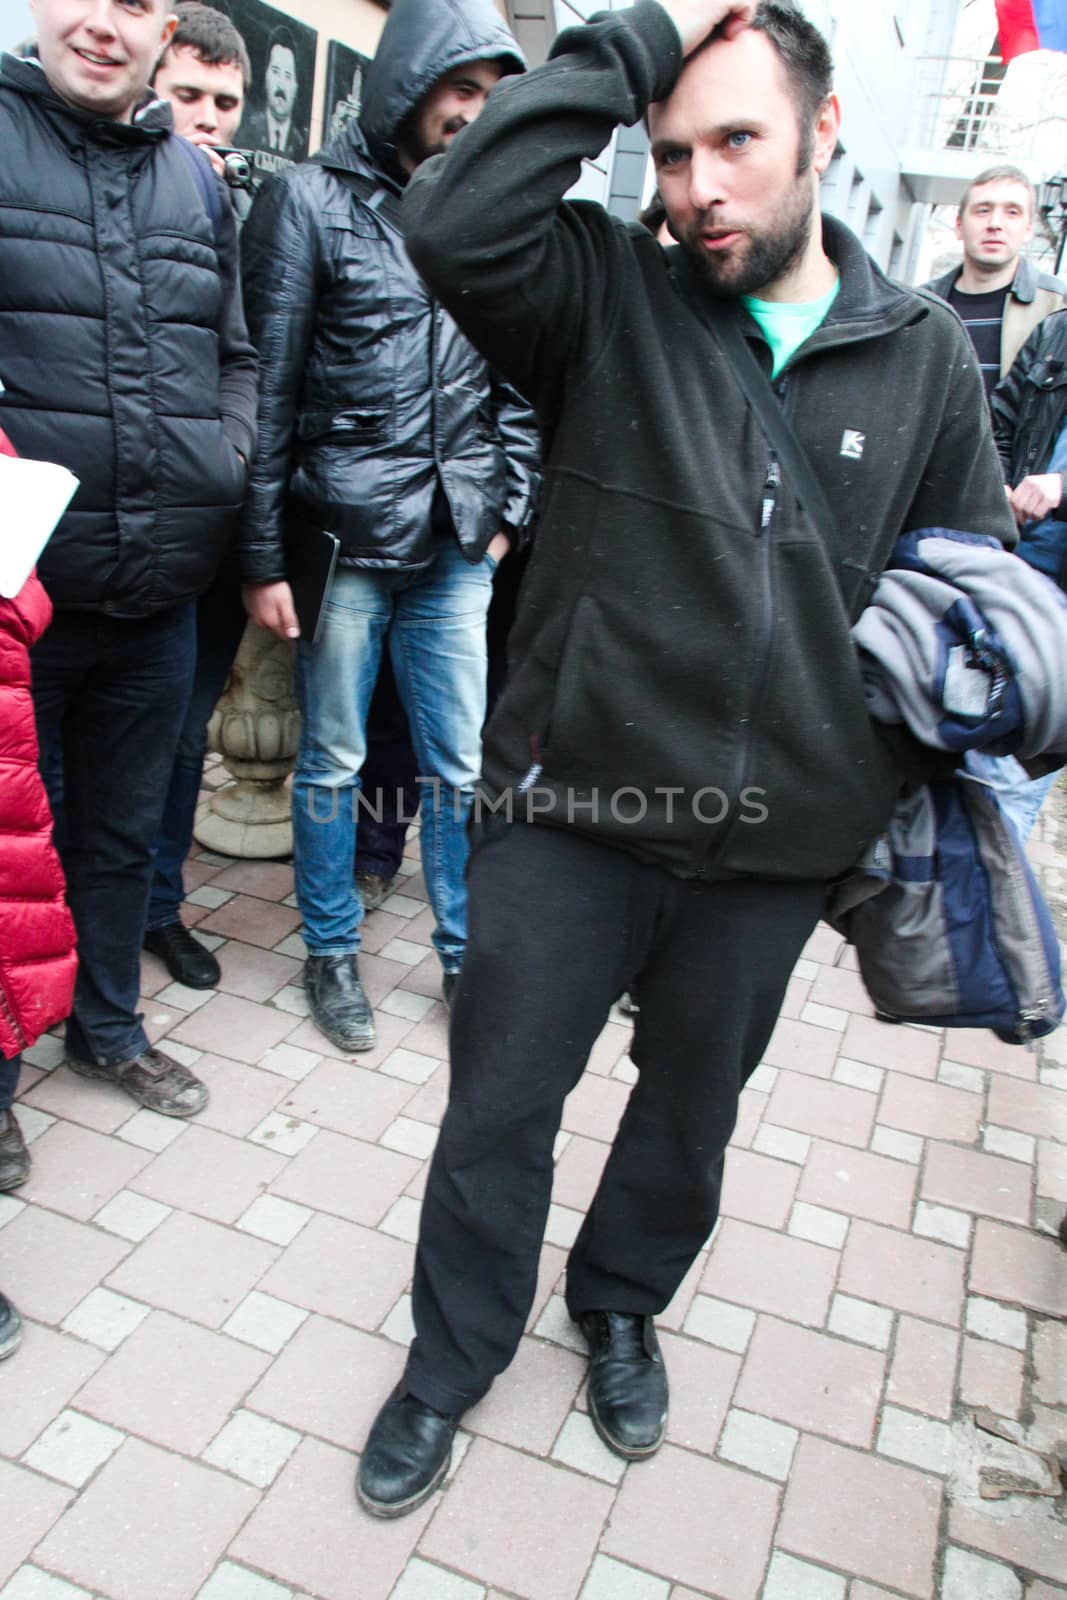 Tuapse, Krasnodar region, Russia - March 23, 2012. The ecologist Suren Gazaryan just left from under arrest